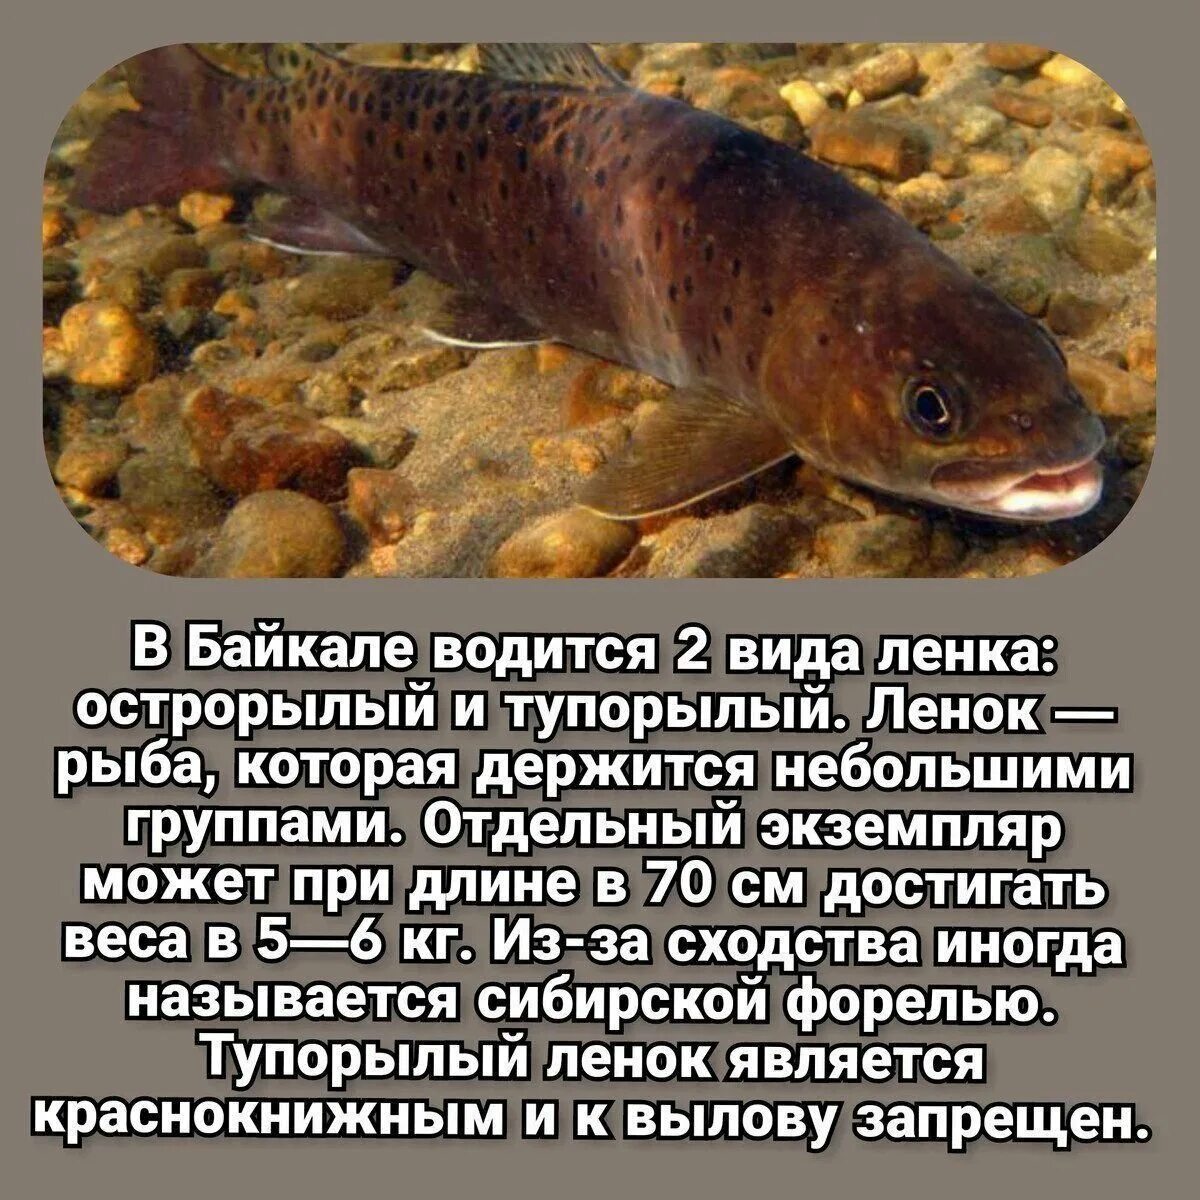 Самые большие рыбы Байкала. Самая большая рыба в Байкале. Уникальные рыбы Байкала. Самая крупная рыба Байкала.